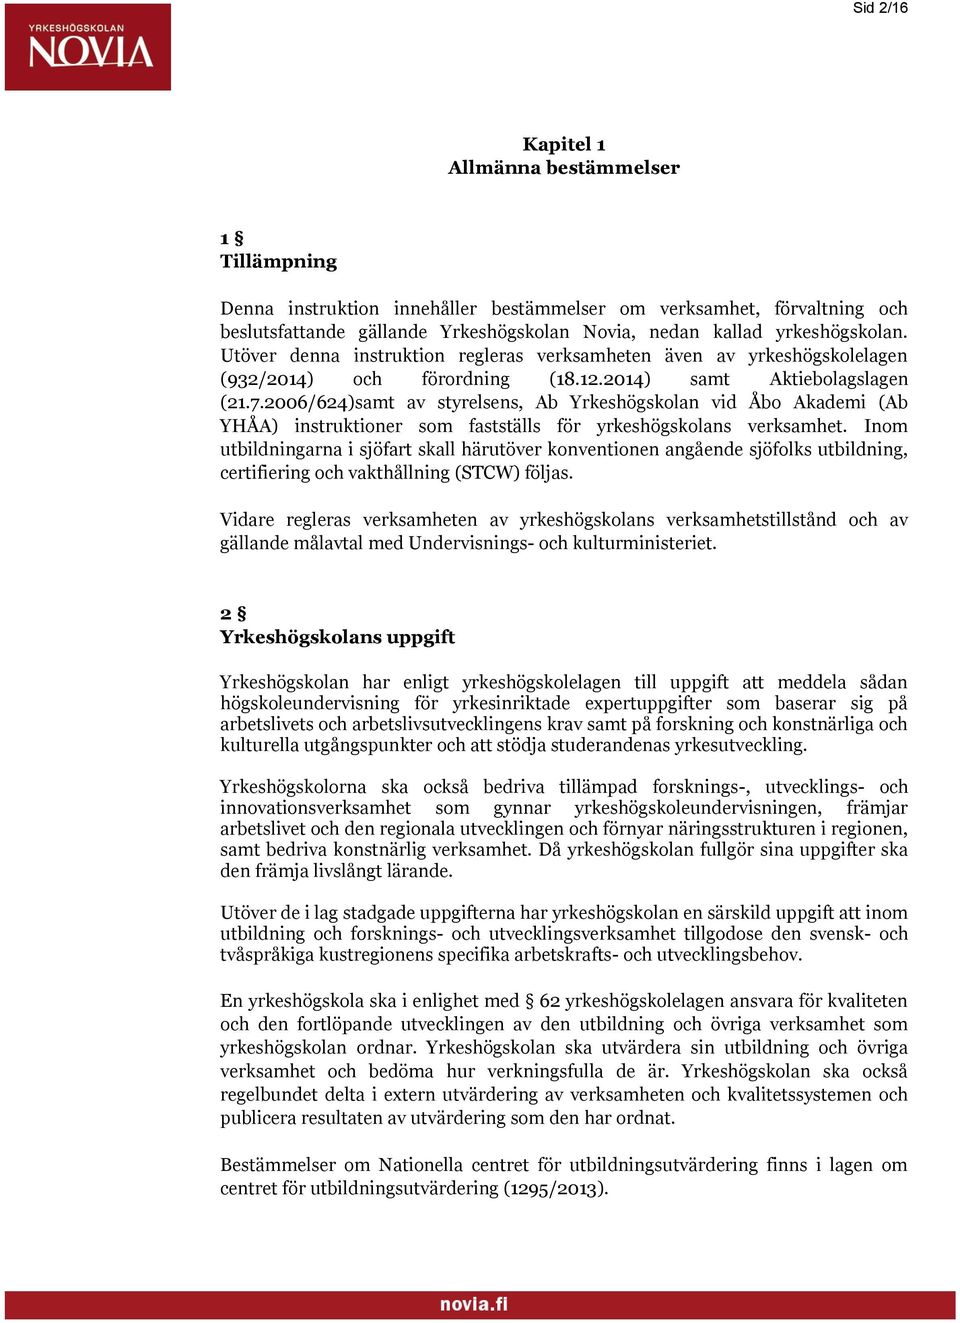 2006/624)samt av styrelsens, Ab Yrkeshögskolan vid Åbo Akademi (Ab YHÅA) instruktioner som fastställs för yrkeshögskolans verksamhet.